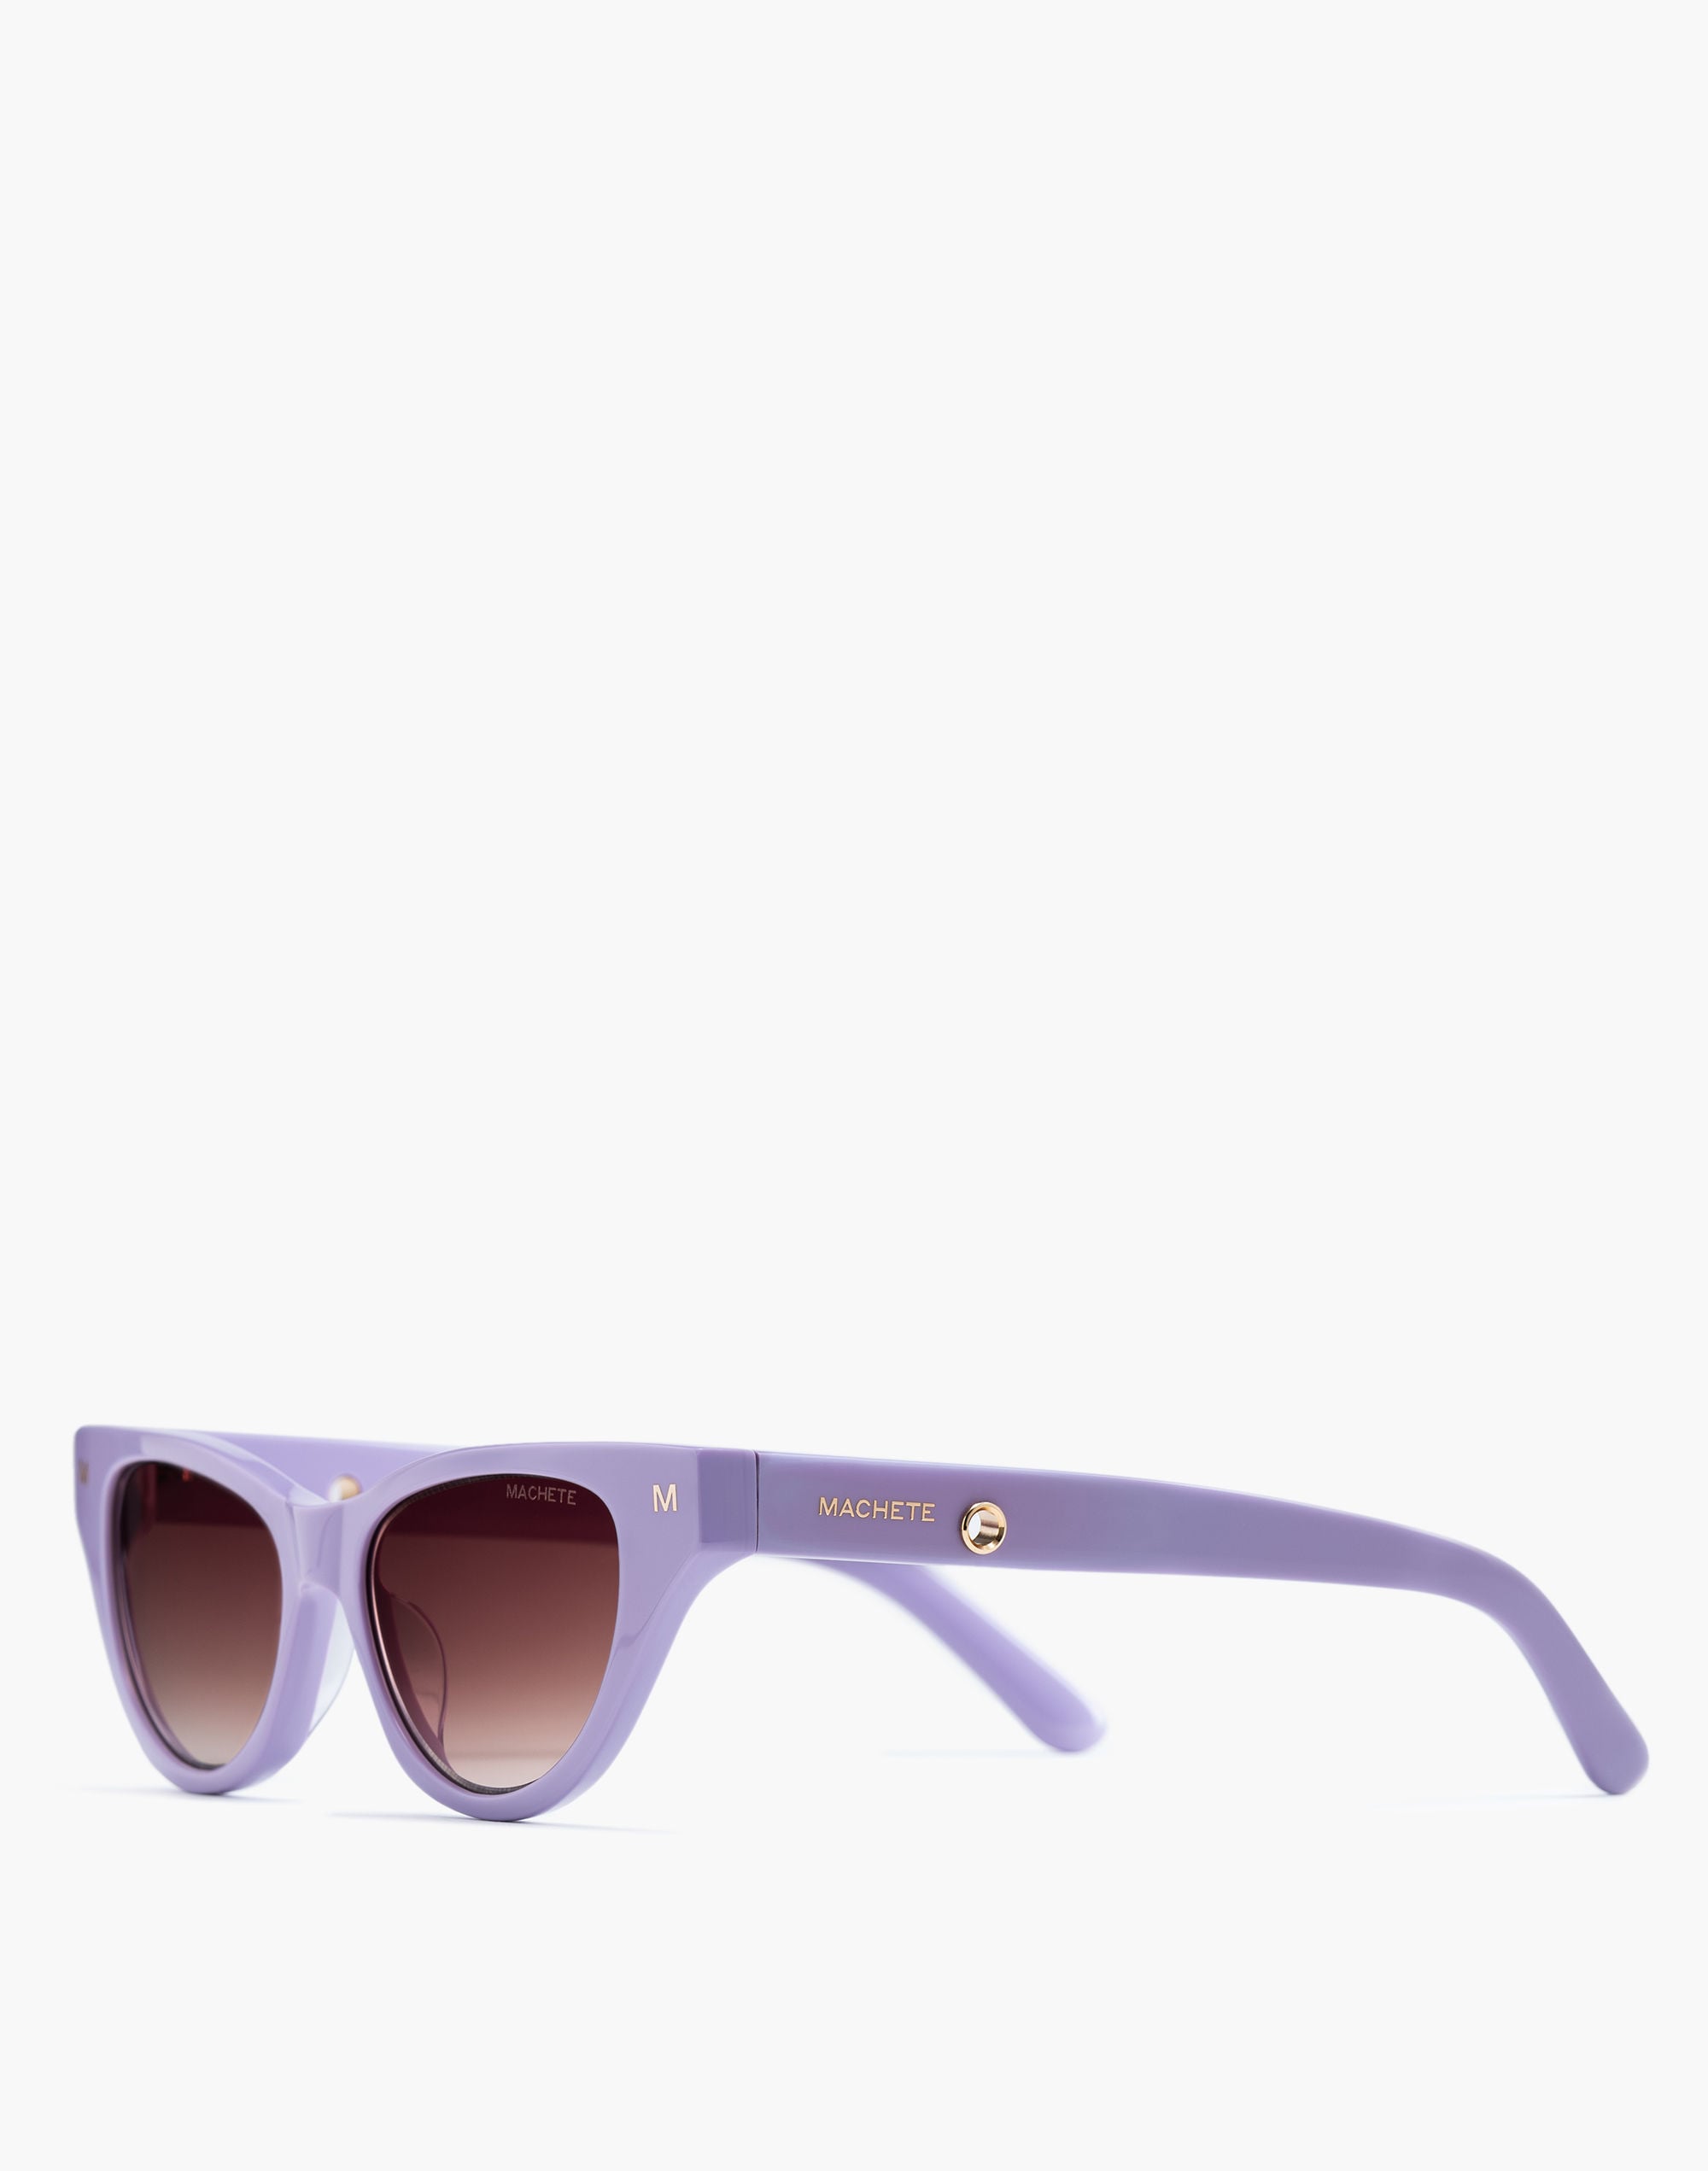 Mw Machete Suzy Sunglasses In Violet